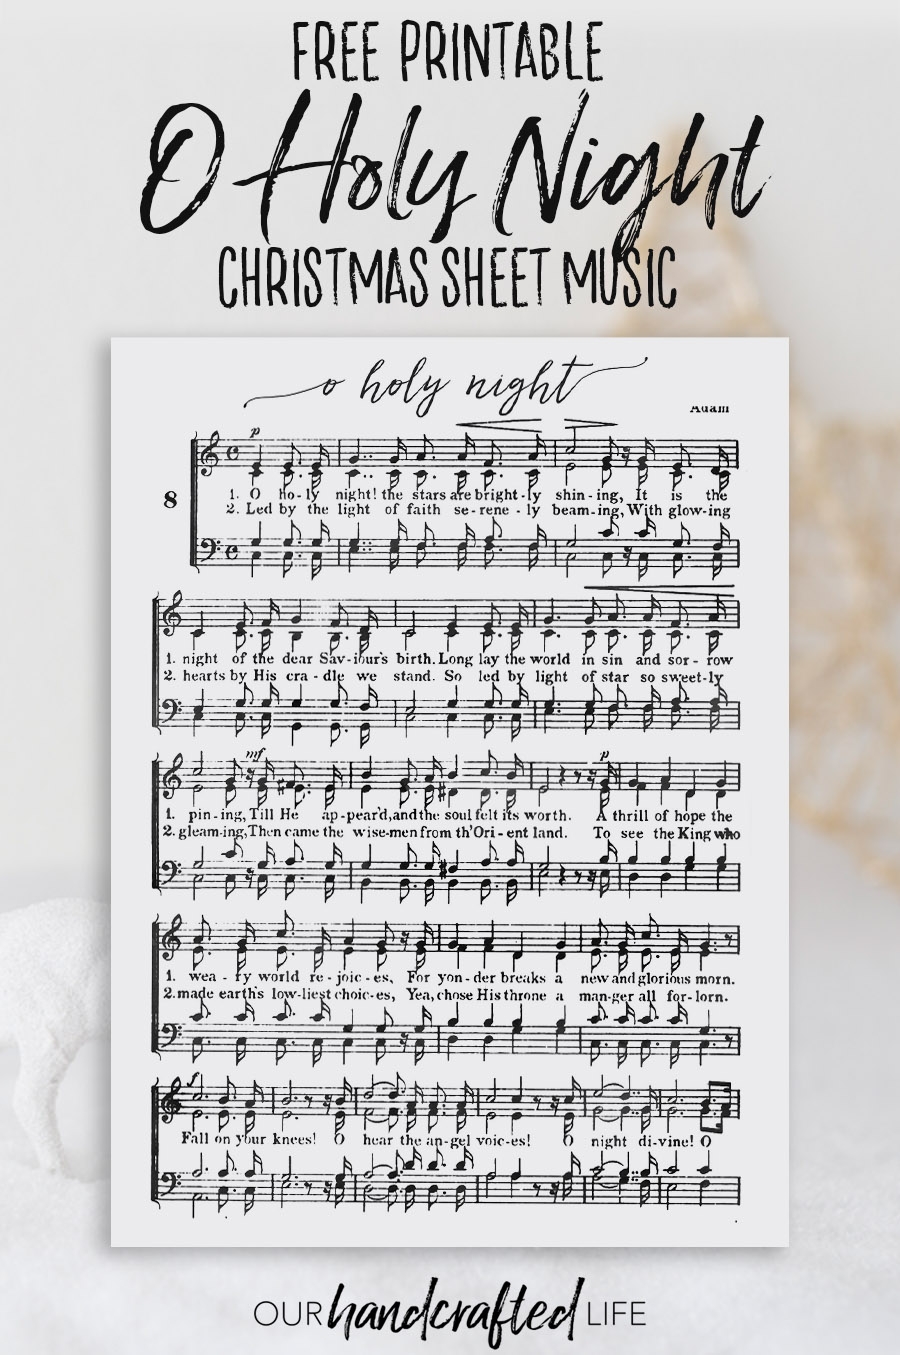 O Holy Night Free Printable Christmas Sheet Music Our Handcrafted Life - Christmas Carols Sheet Music Free Printable